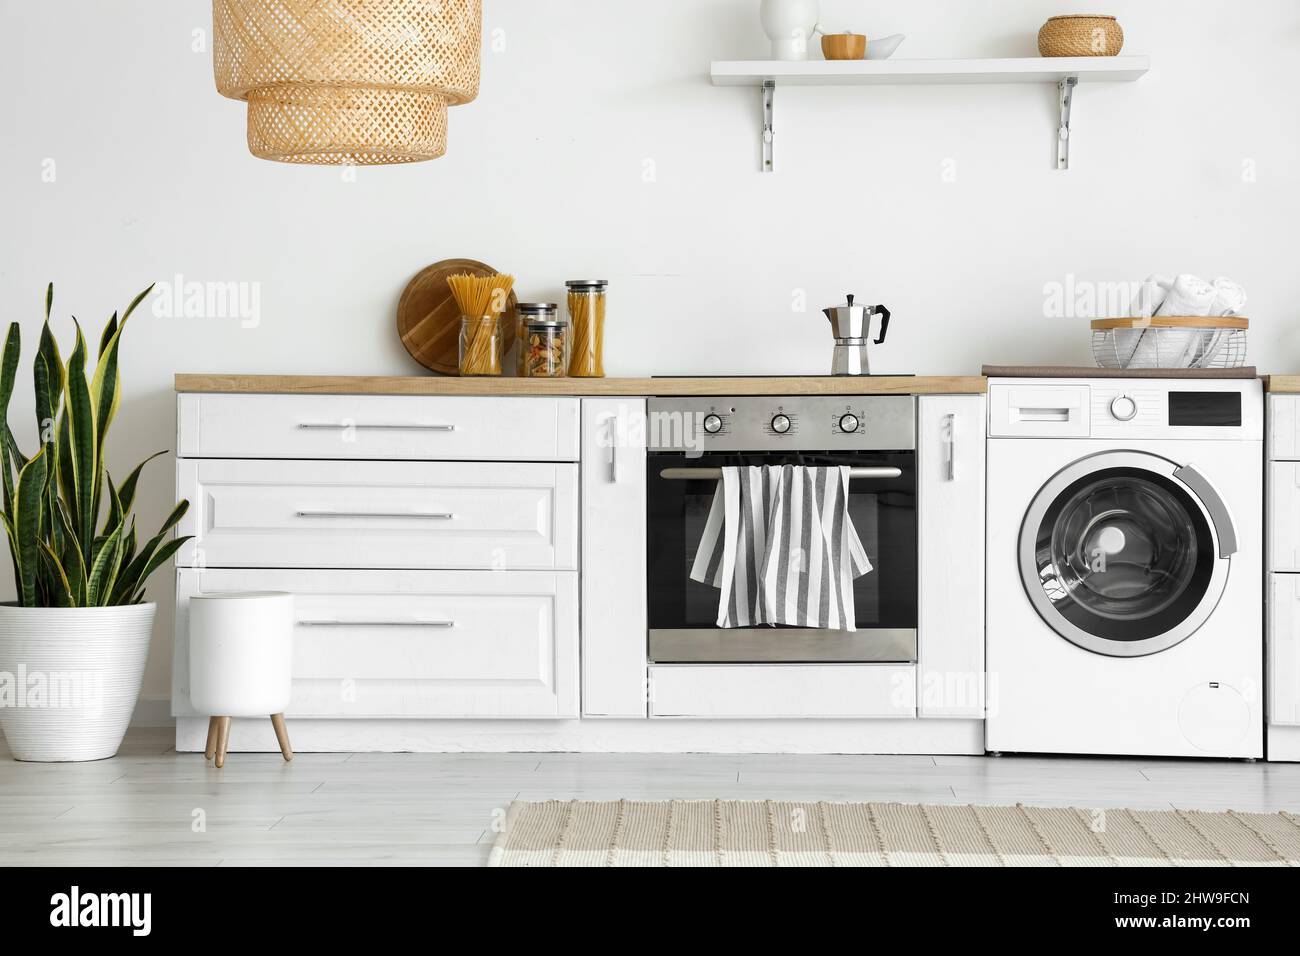 Innenraum der hellen Küche mit Waschmaschine, Backofen und weißer Theke  Stockfotografie - Alamy